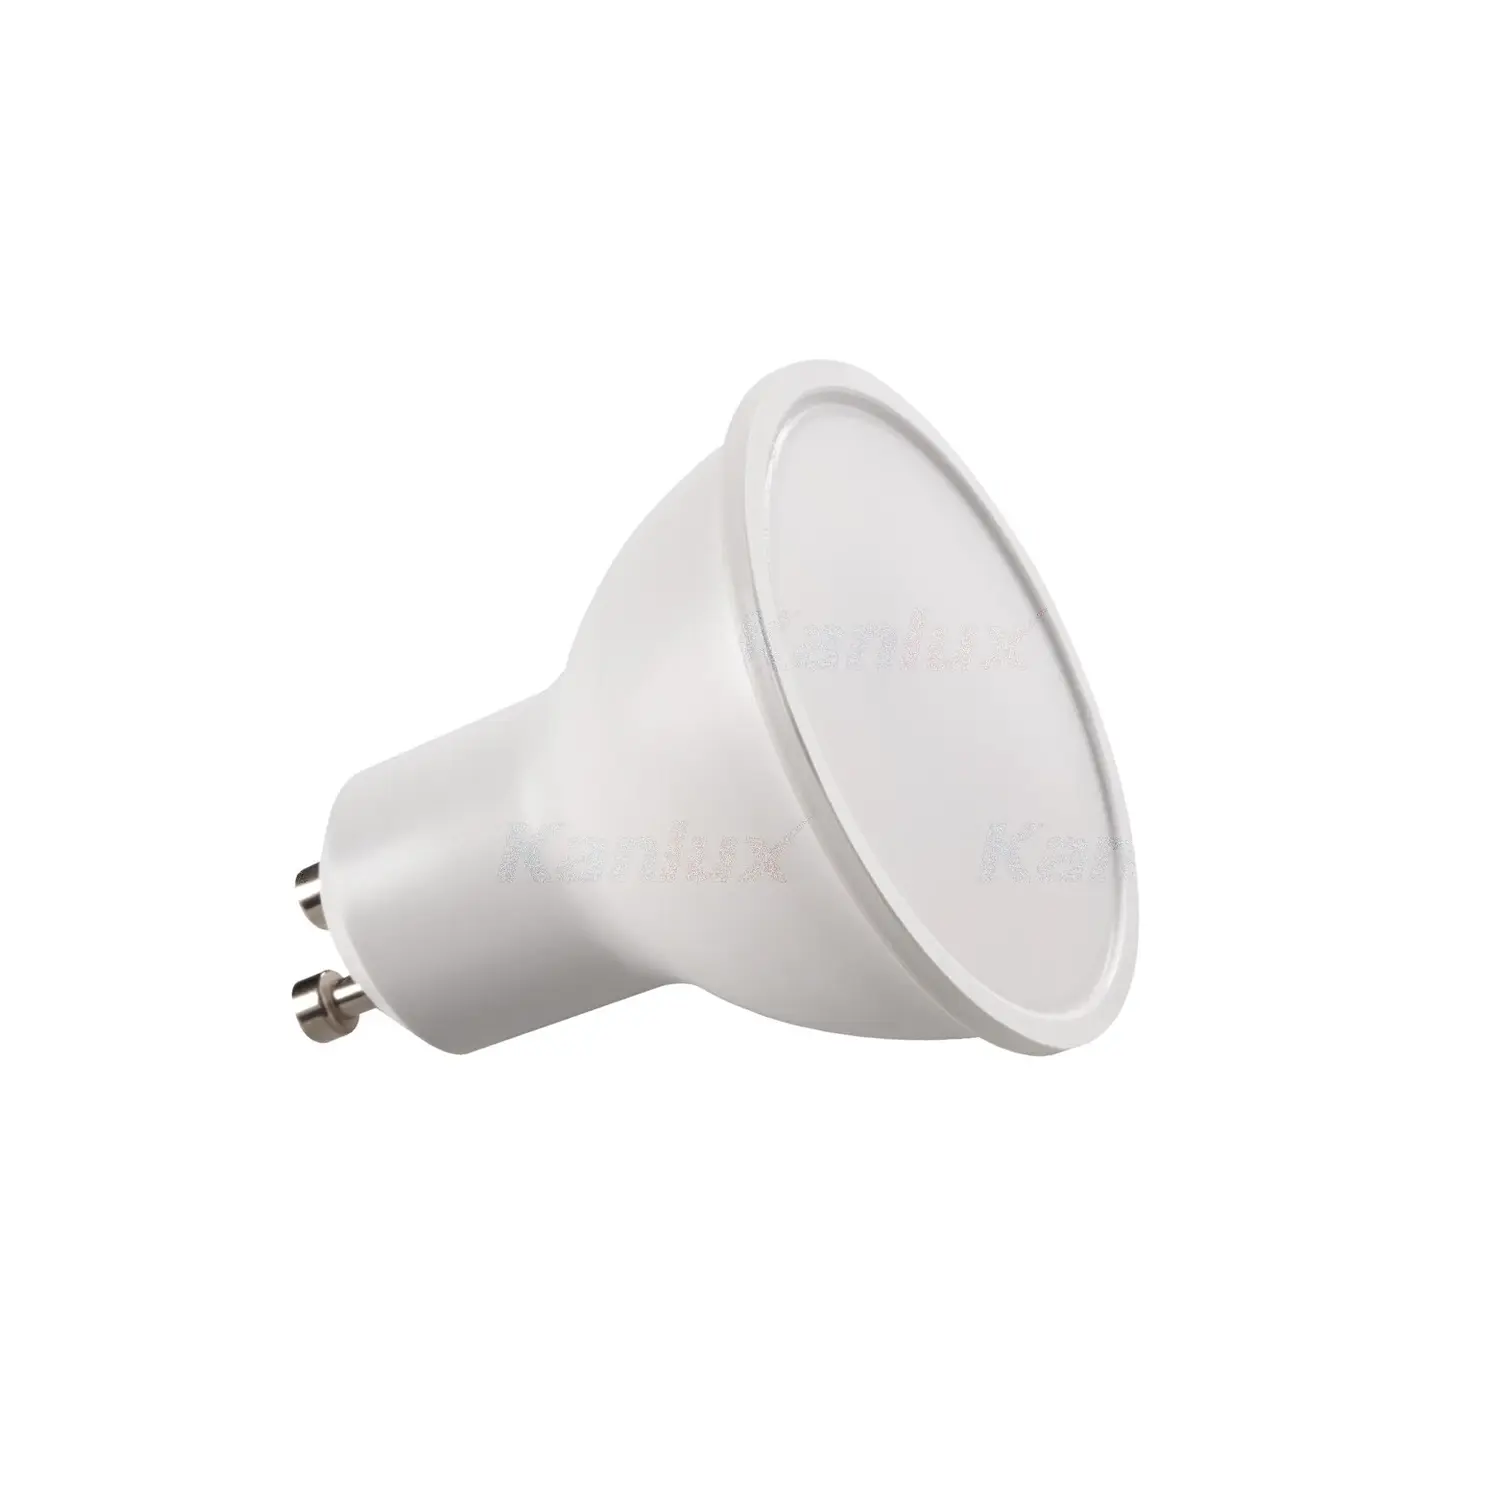 immagine del prodotto lampadina led lampada tomi faretti gu10 1,20 watt bianco caldo